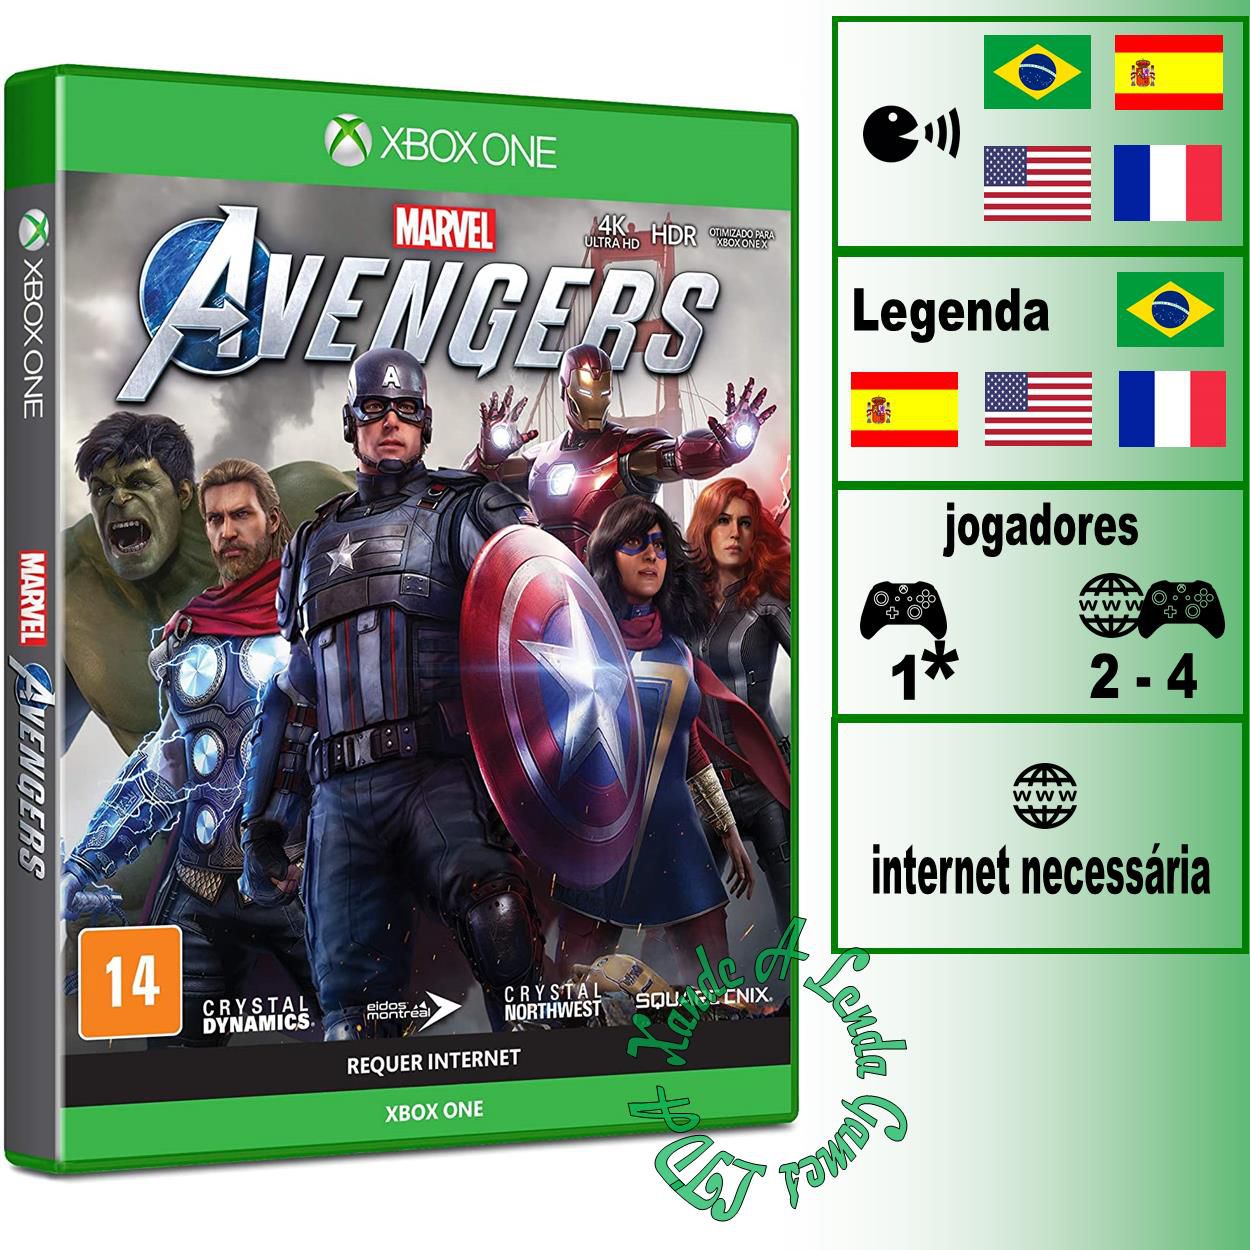 Marvel's Avengers - Xbox One